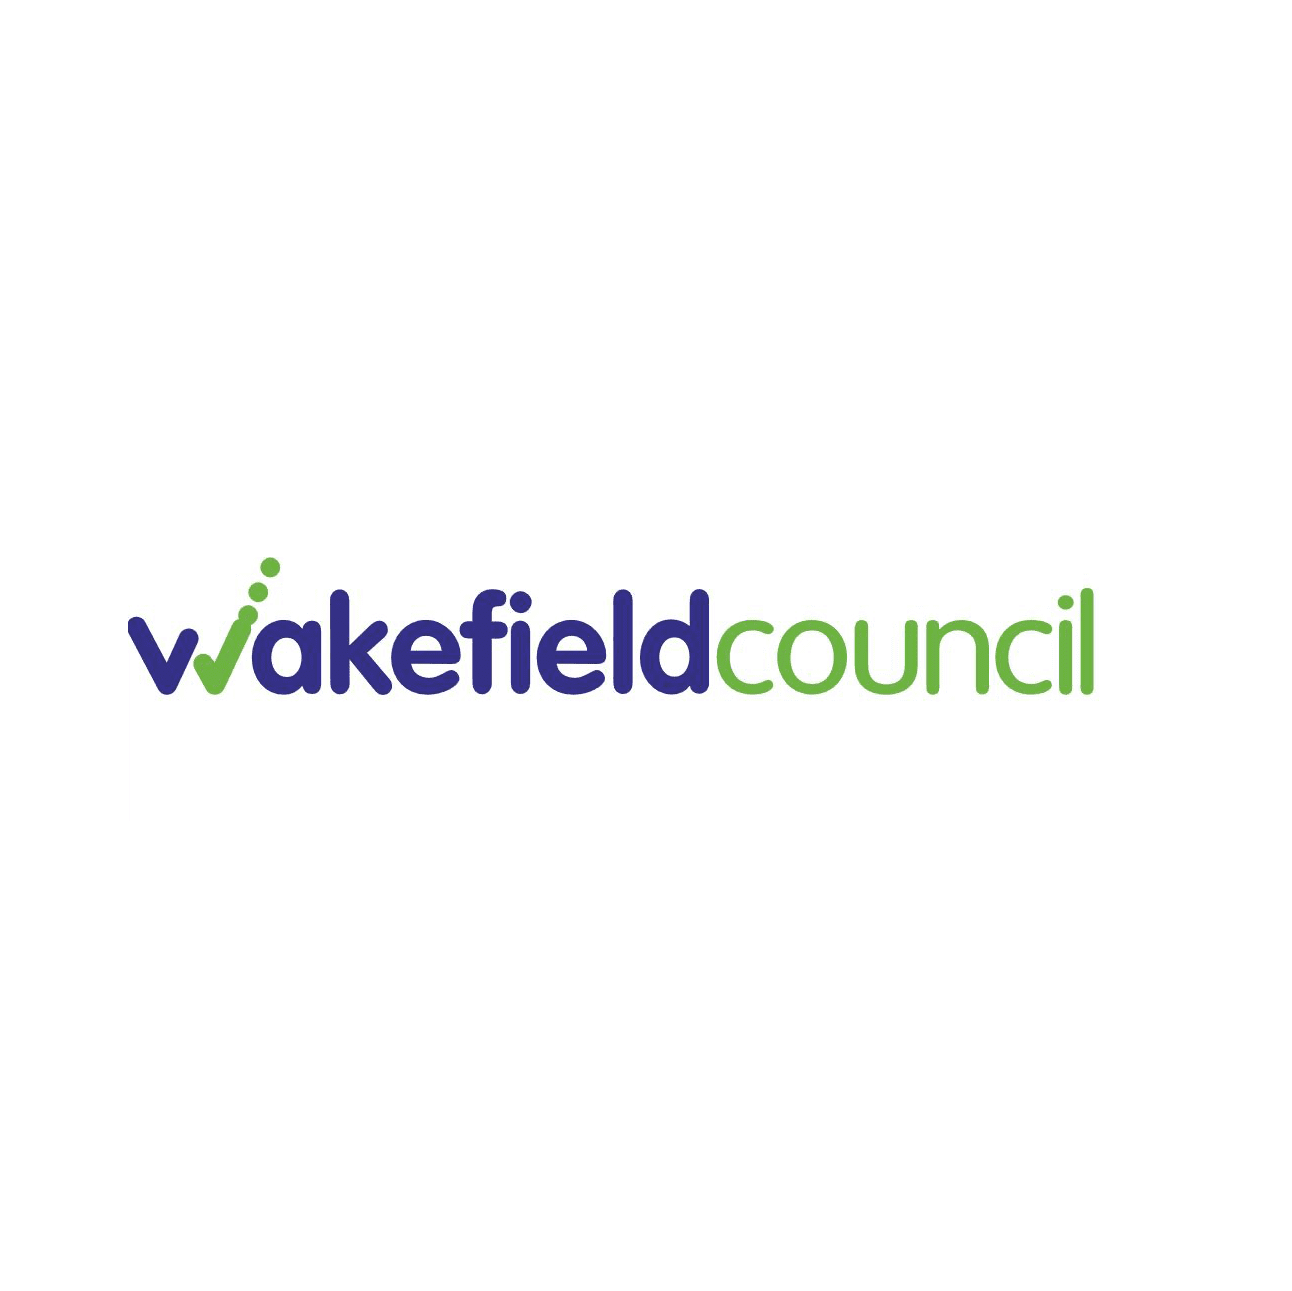 Wakefield gov